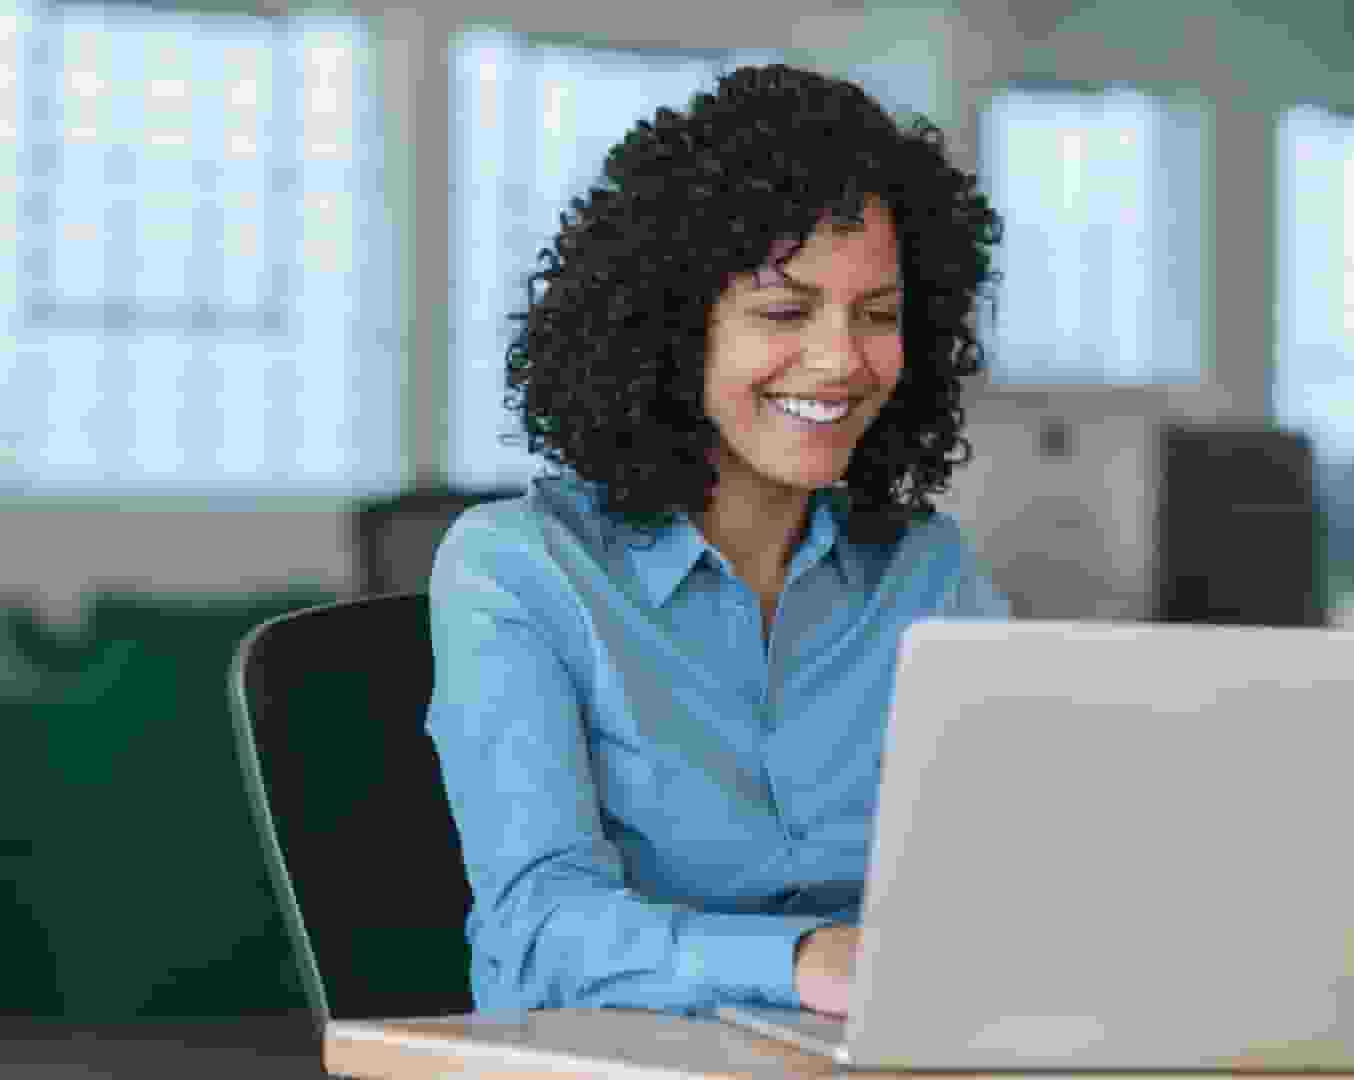 Une femme aux cheveux noirs bouclés portant une chemise bleue sourit en travaillant sur son ordinateur portable